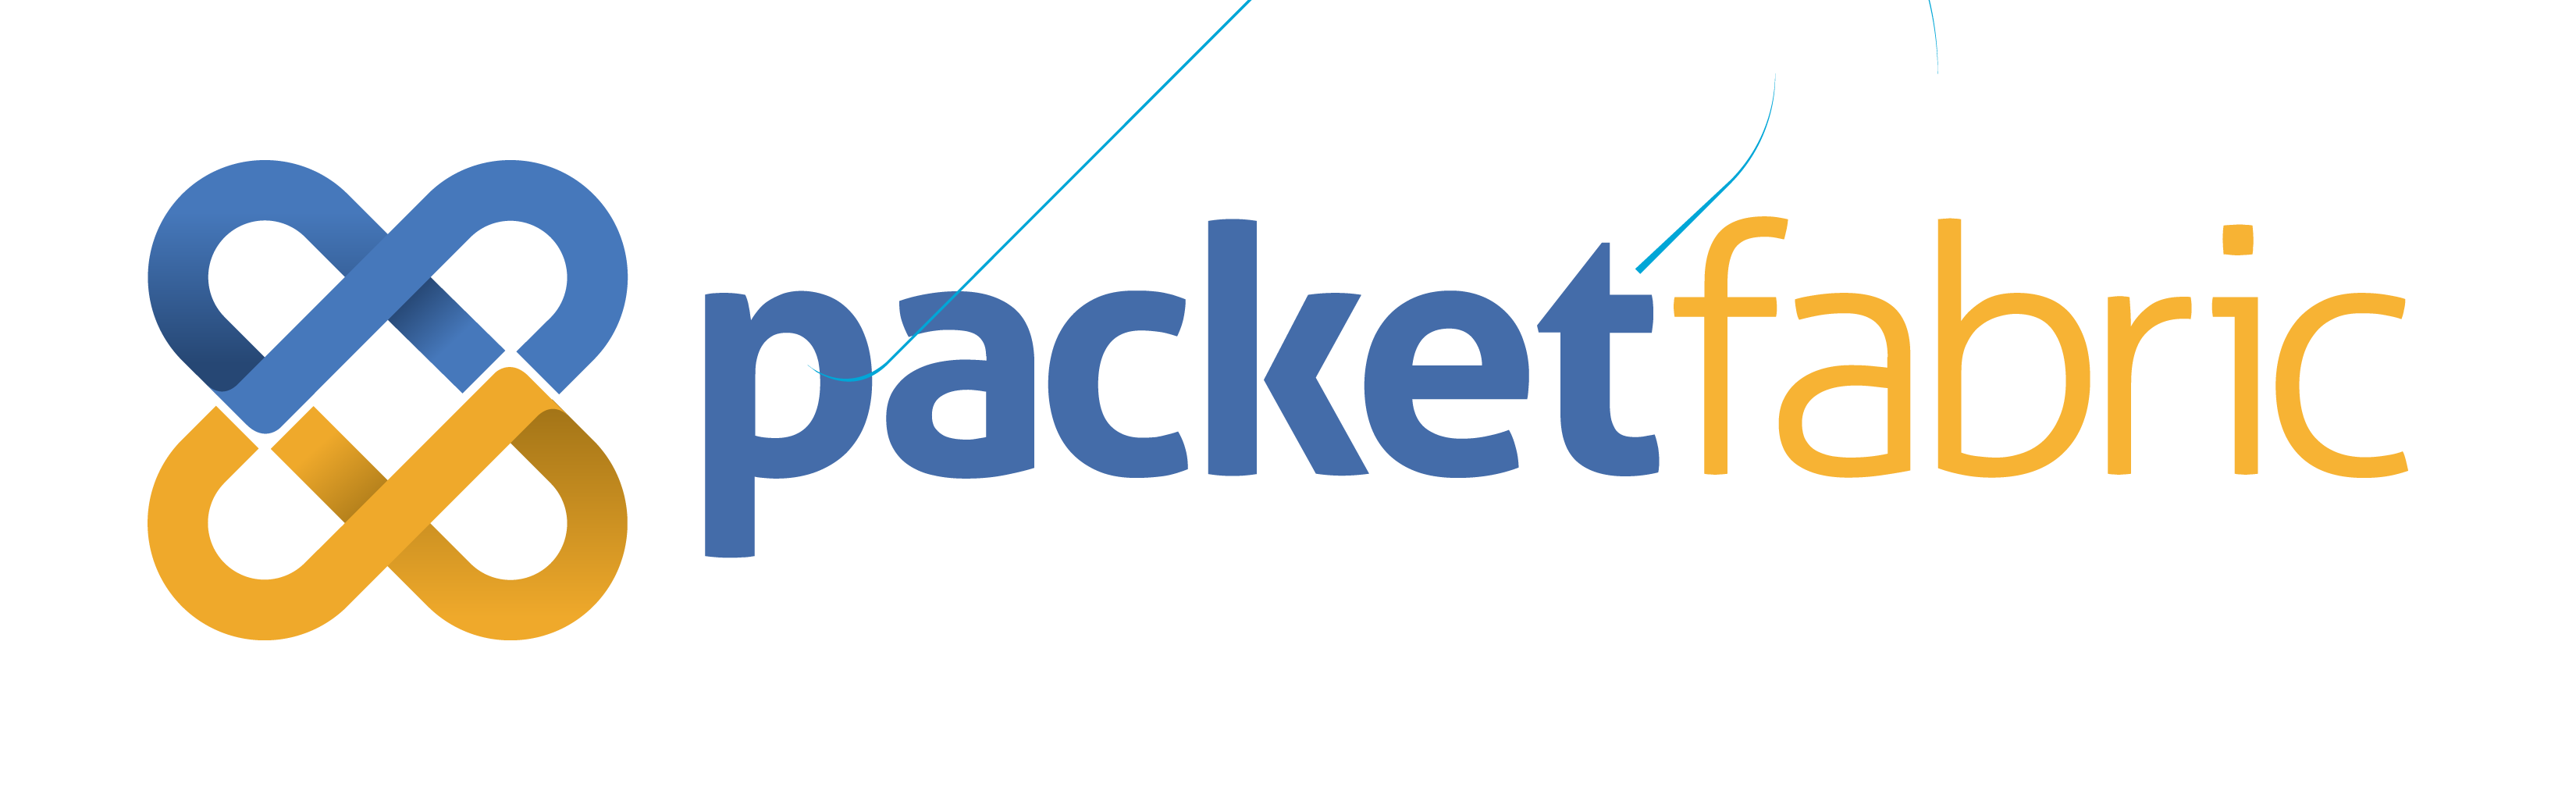 packetfabric-logo